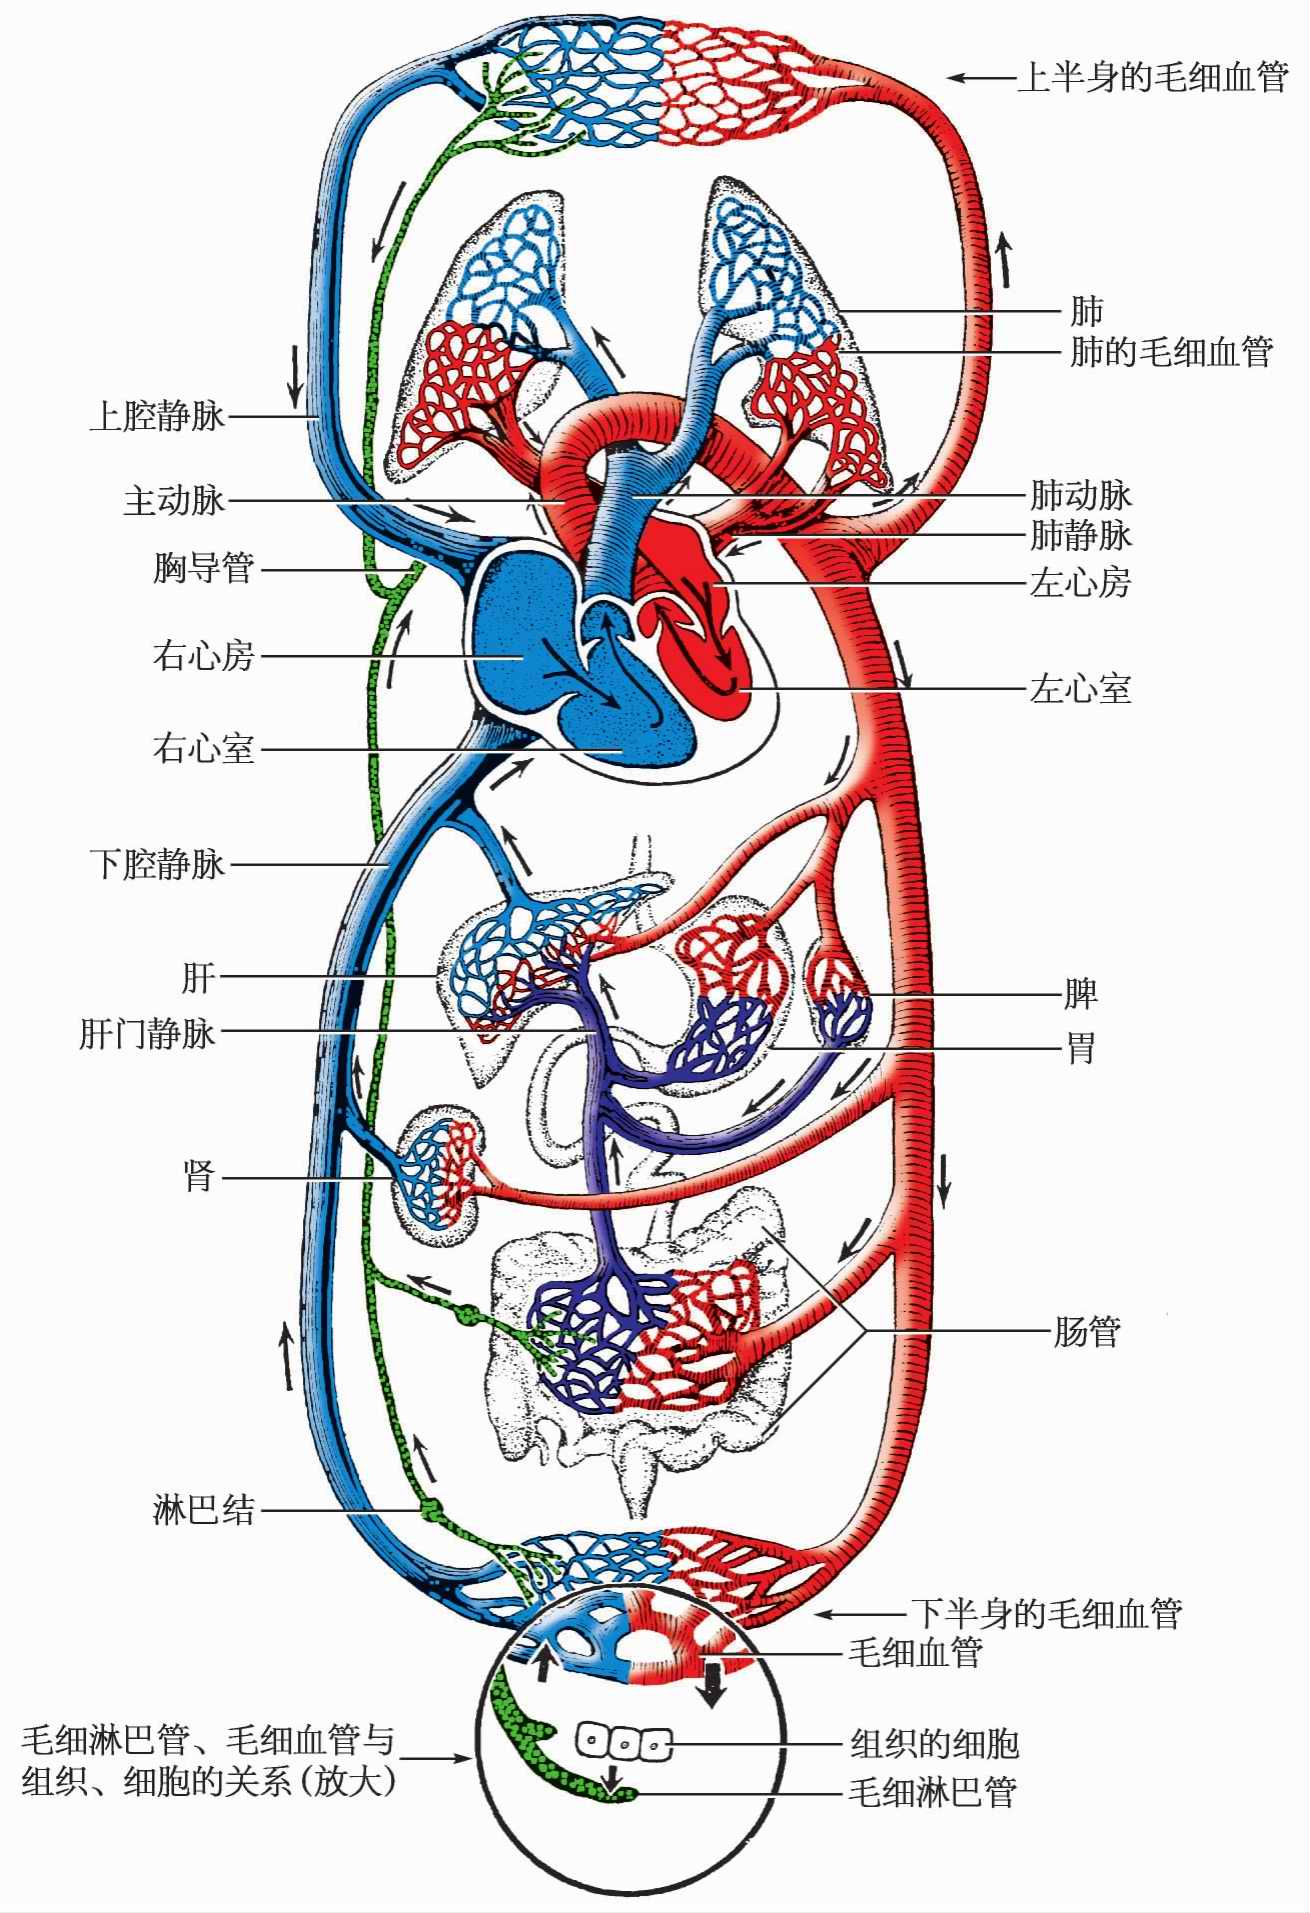 图3-1-17 奇静脉-人体解剖学与组织生理病理学-医学